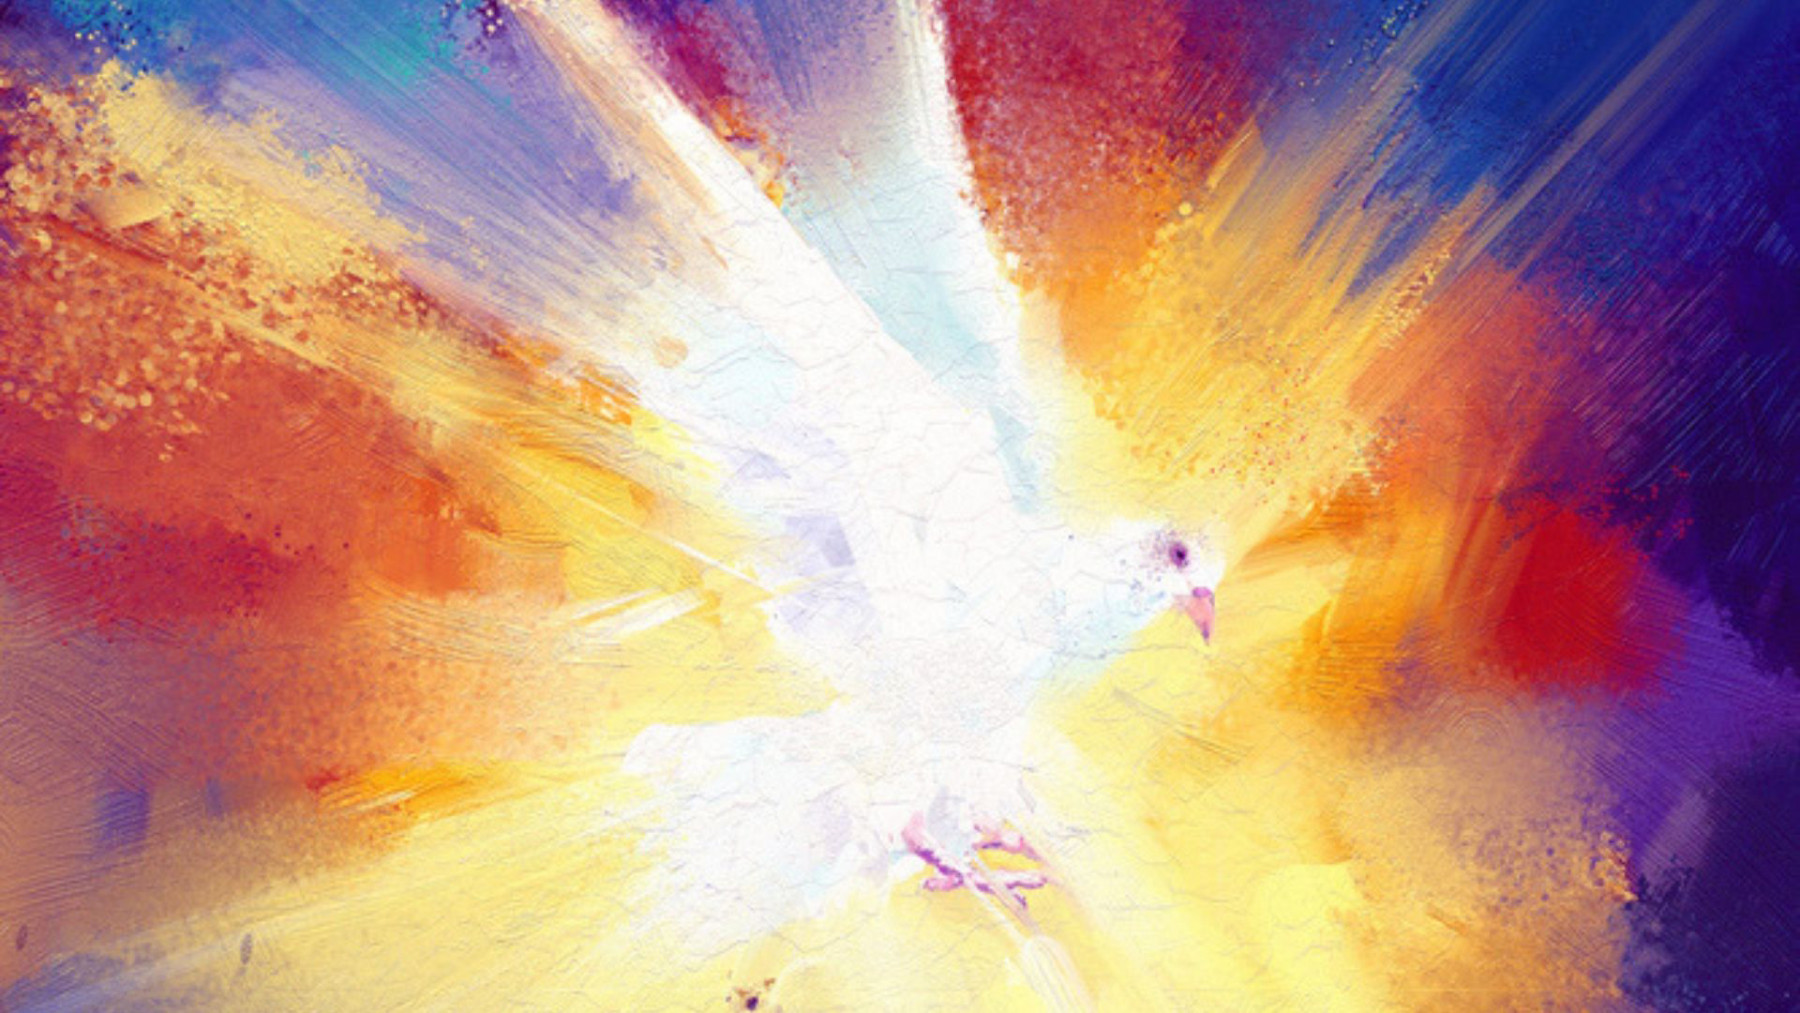 Taube als Heiliger Geist auf farbigem Hintergrund